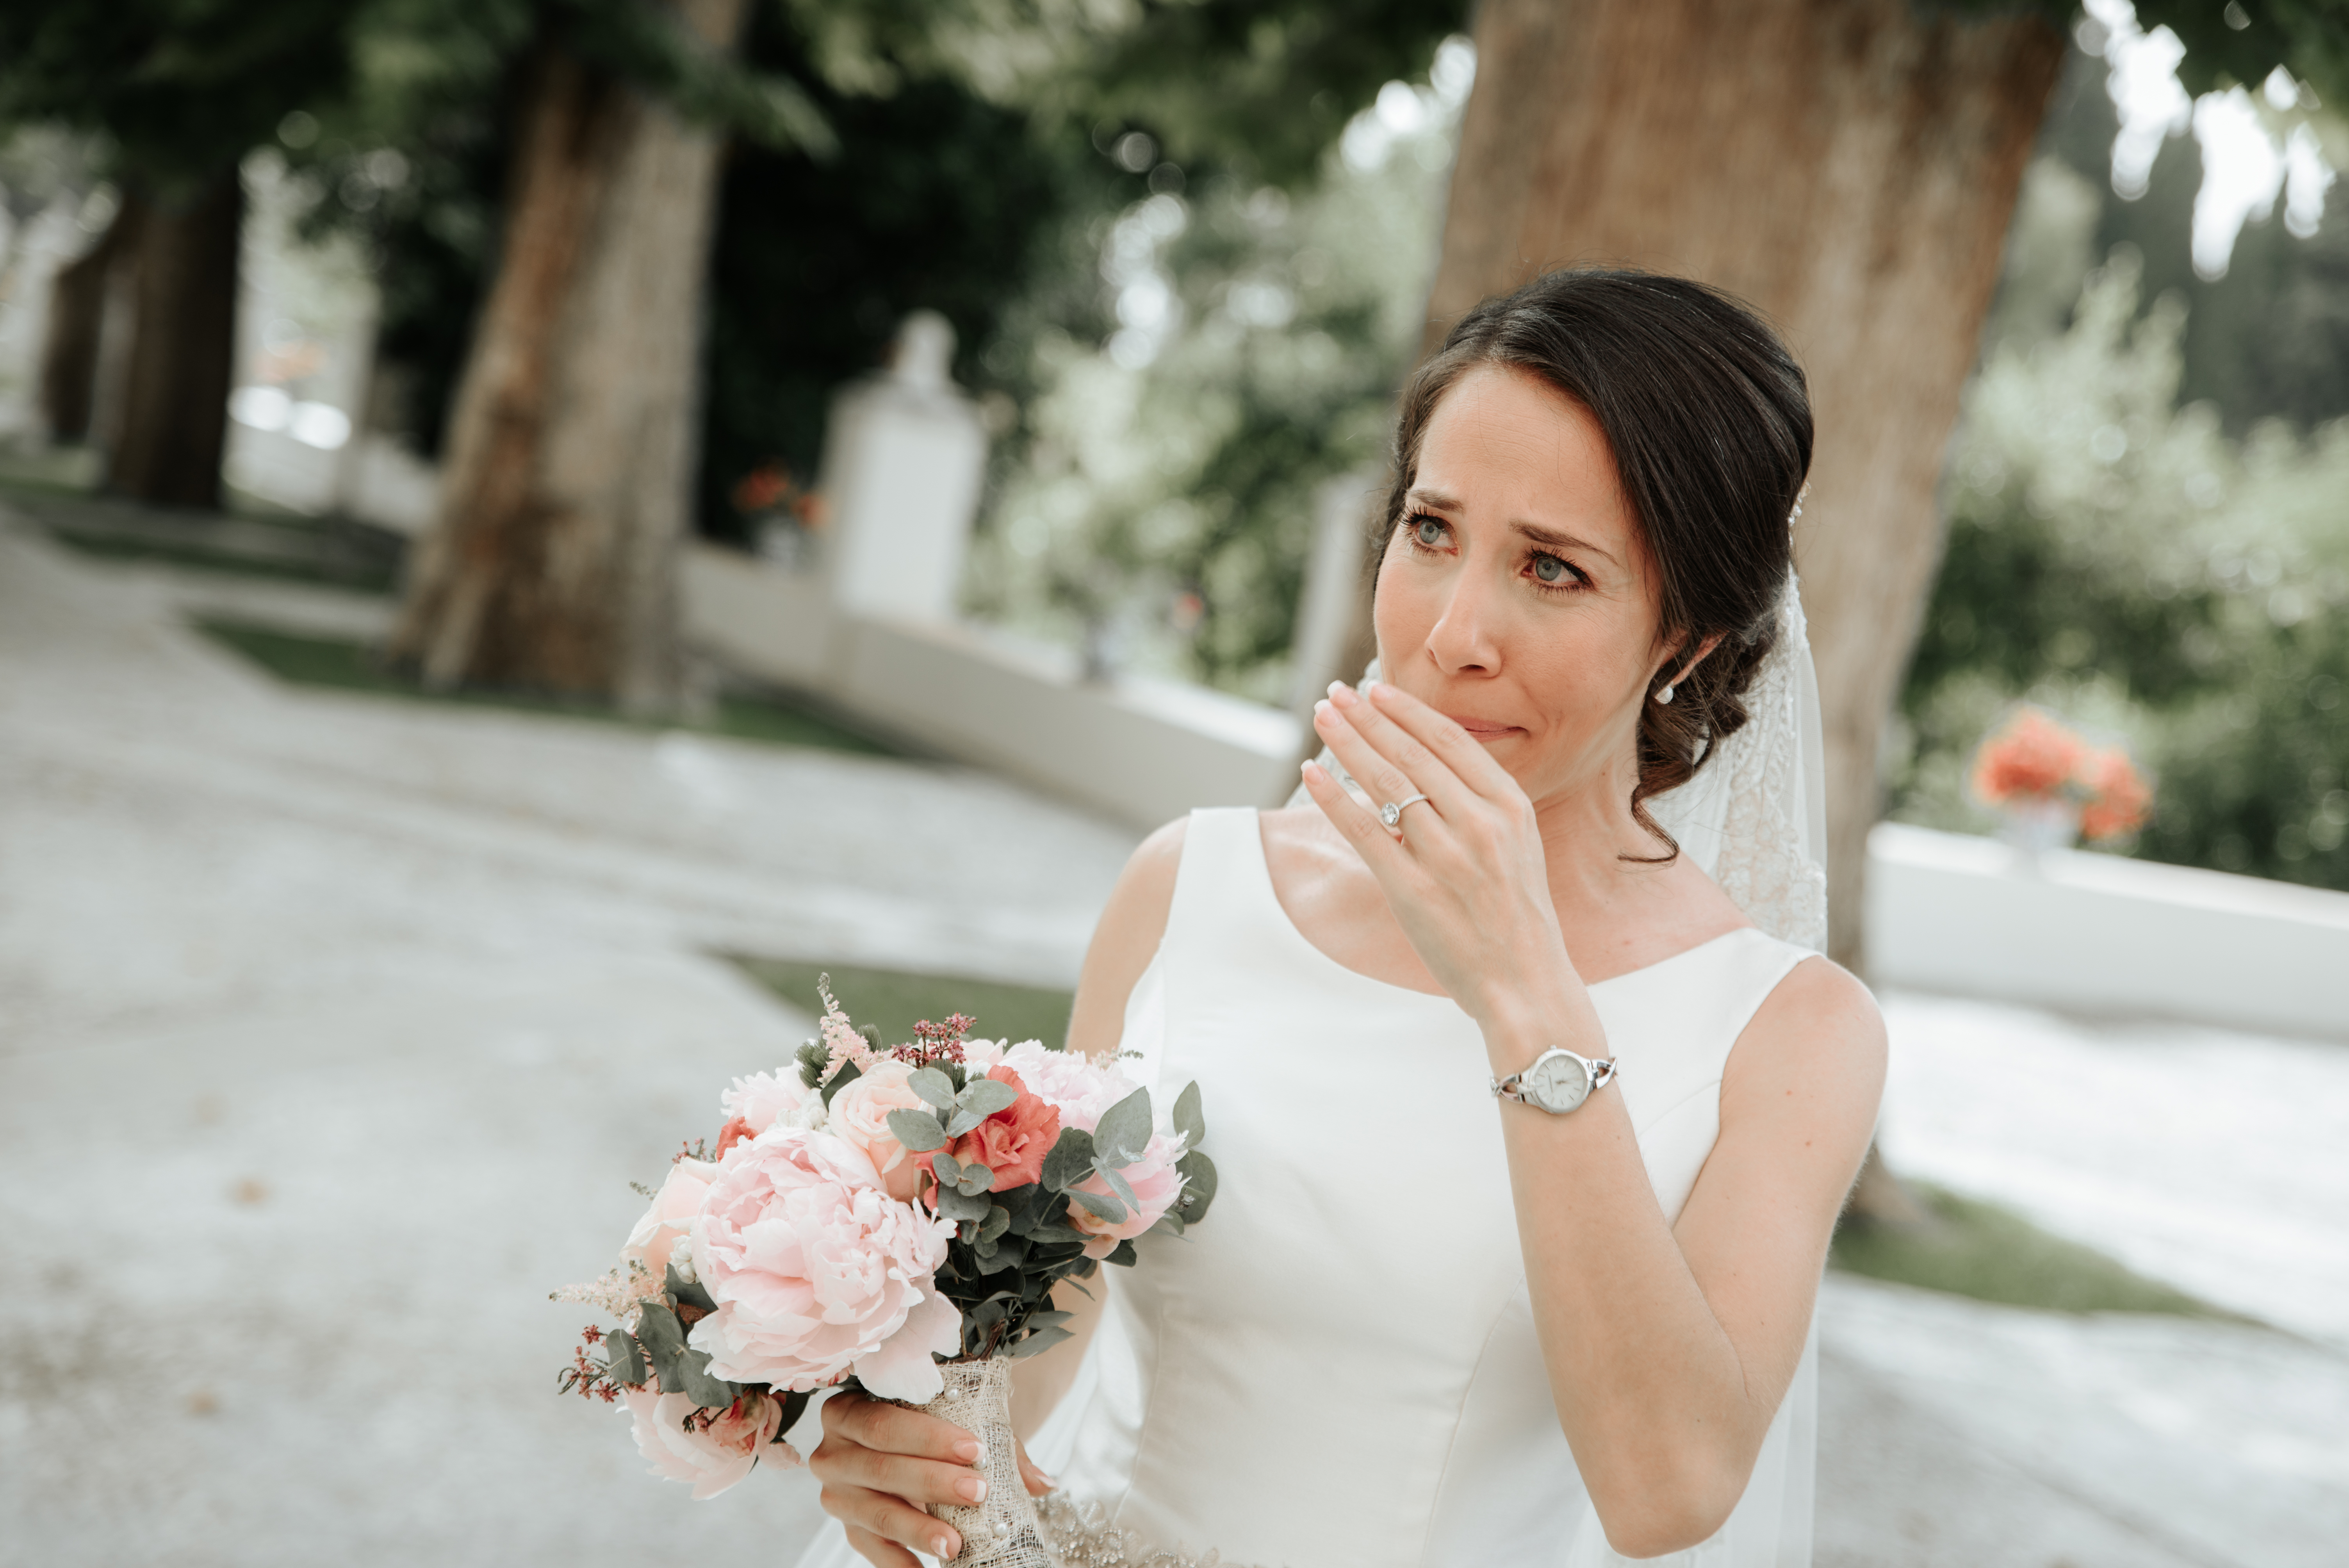 Une magnifique mariée brune est photographiée en train de pleurer | Source : Shutterstock